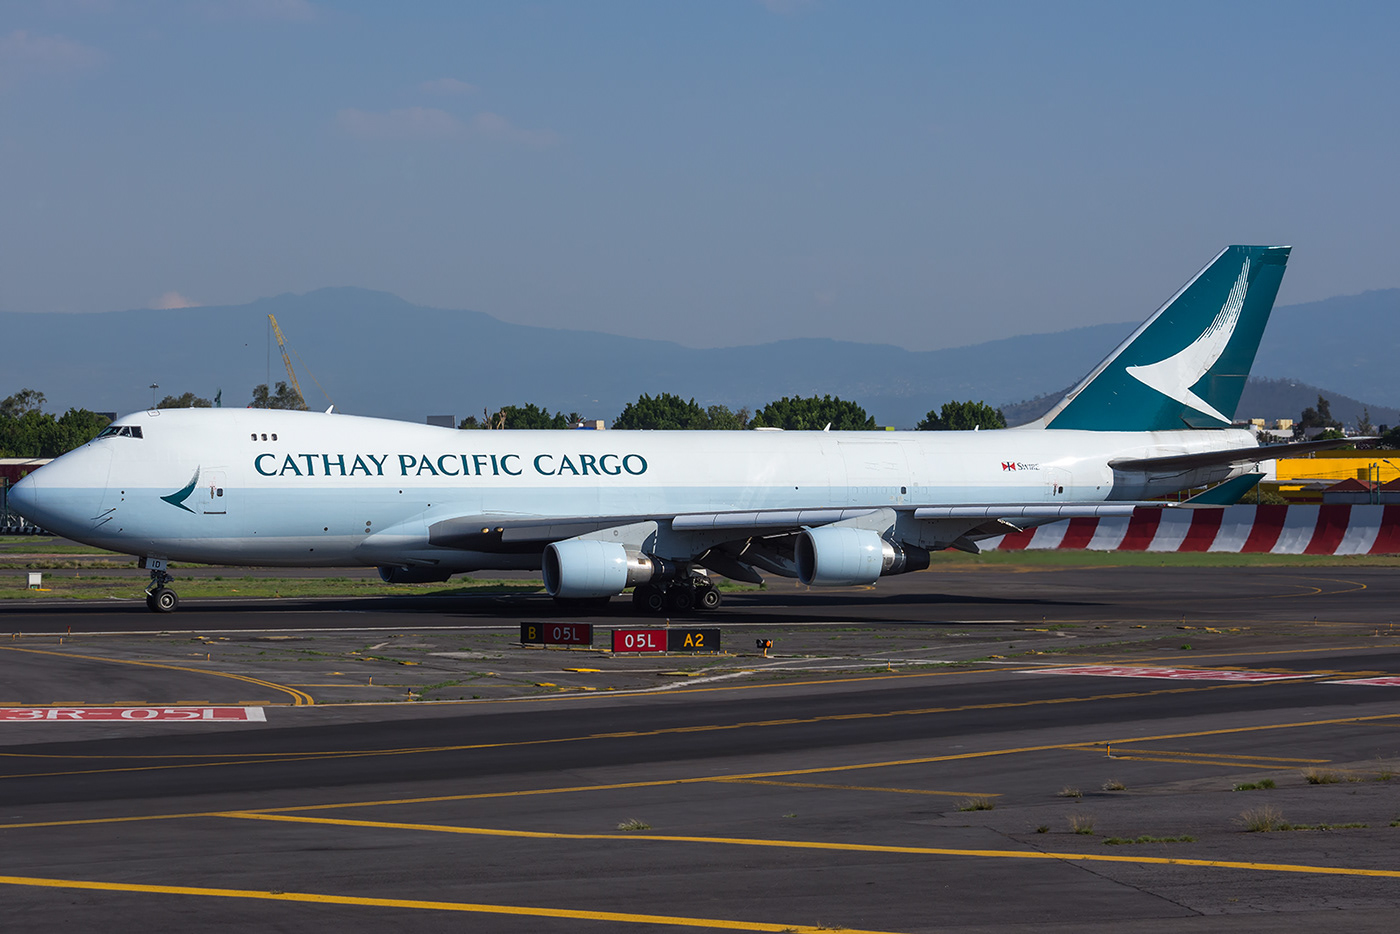 aeronave aeropuerto aviacion Boeing cathay pacific Cathay Pacific Cargo Fotografia mexico queen of the skies transporte